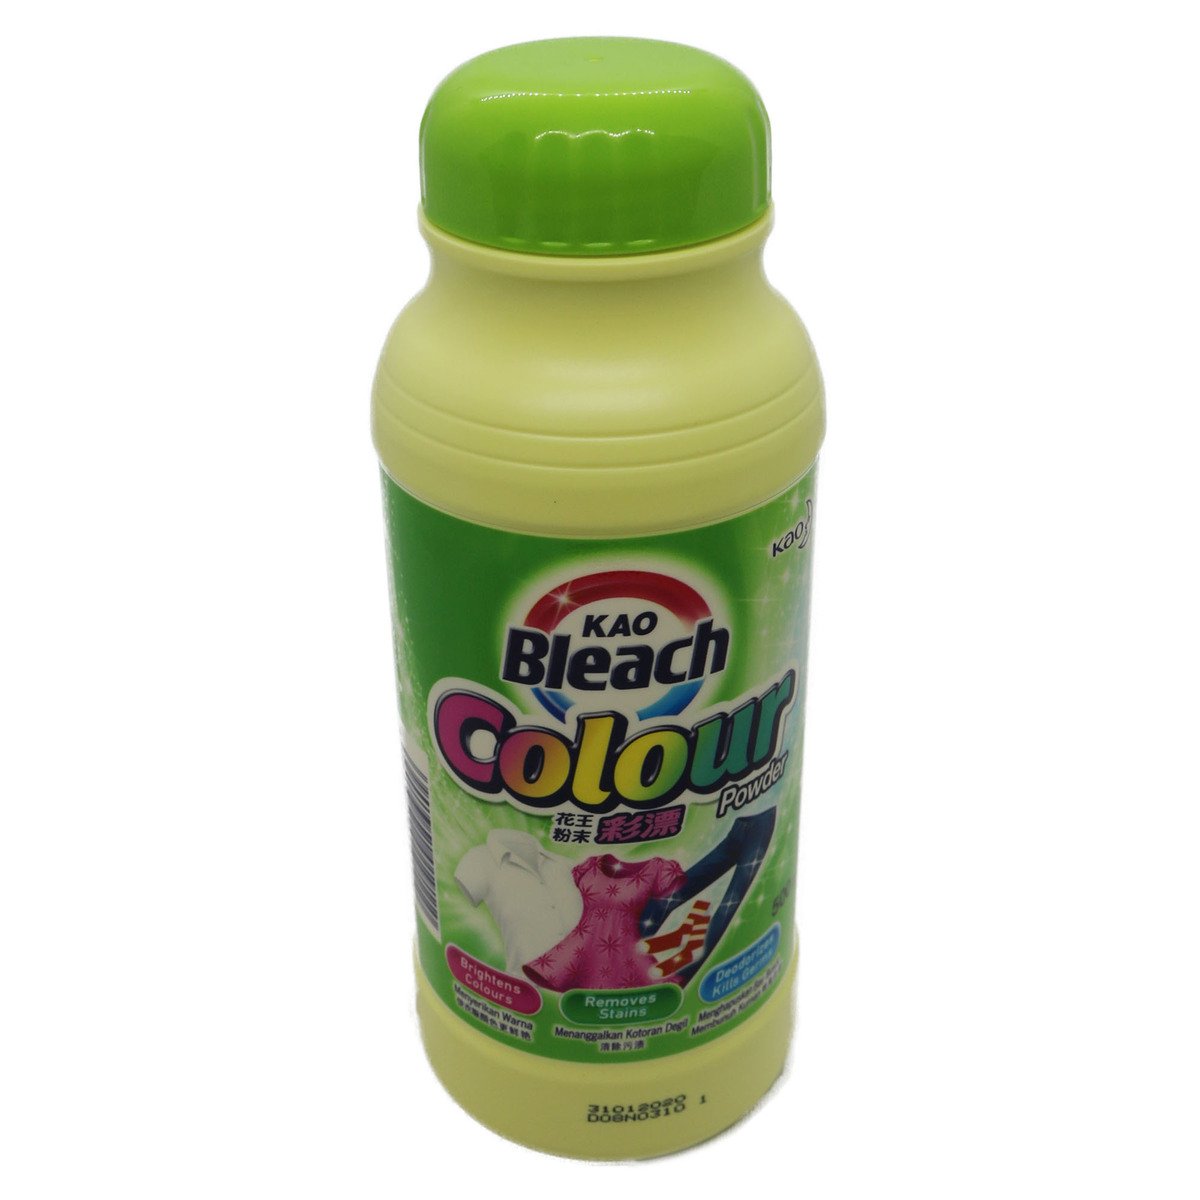 Kao Bleach Colour Powder 500g